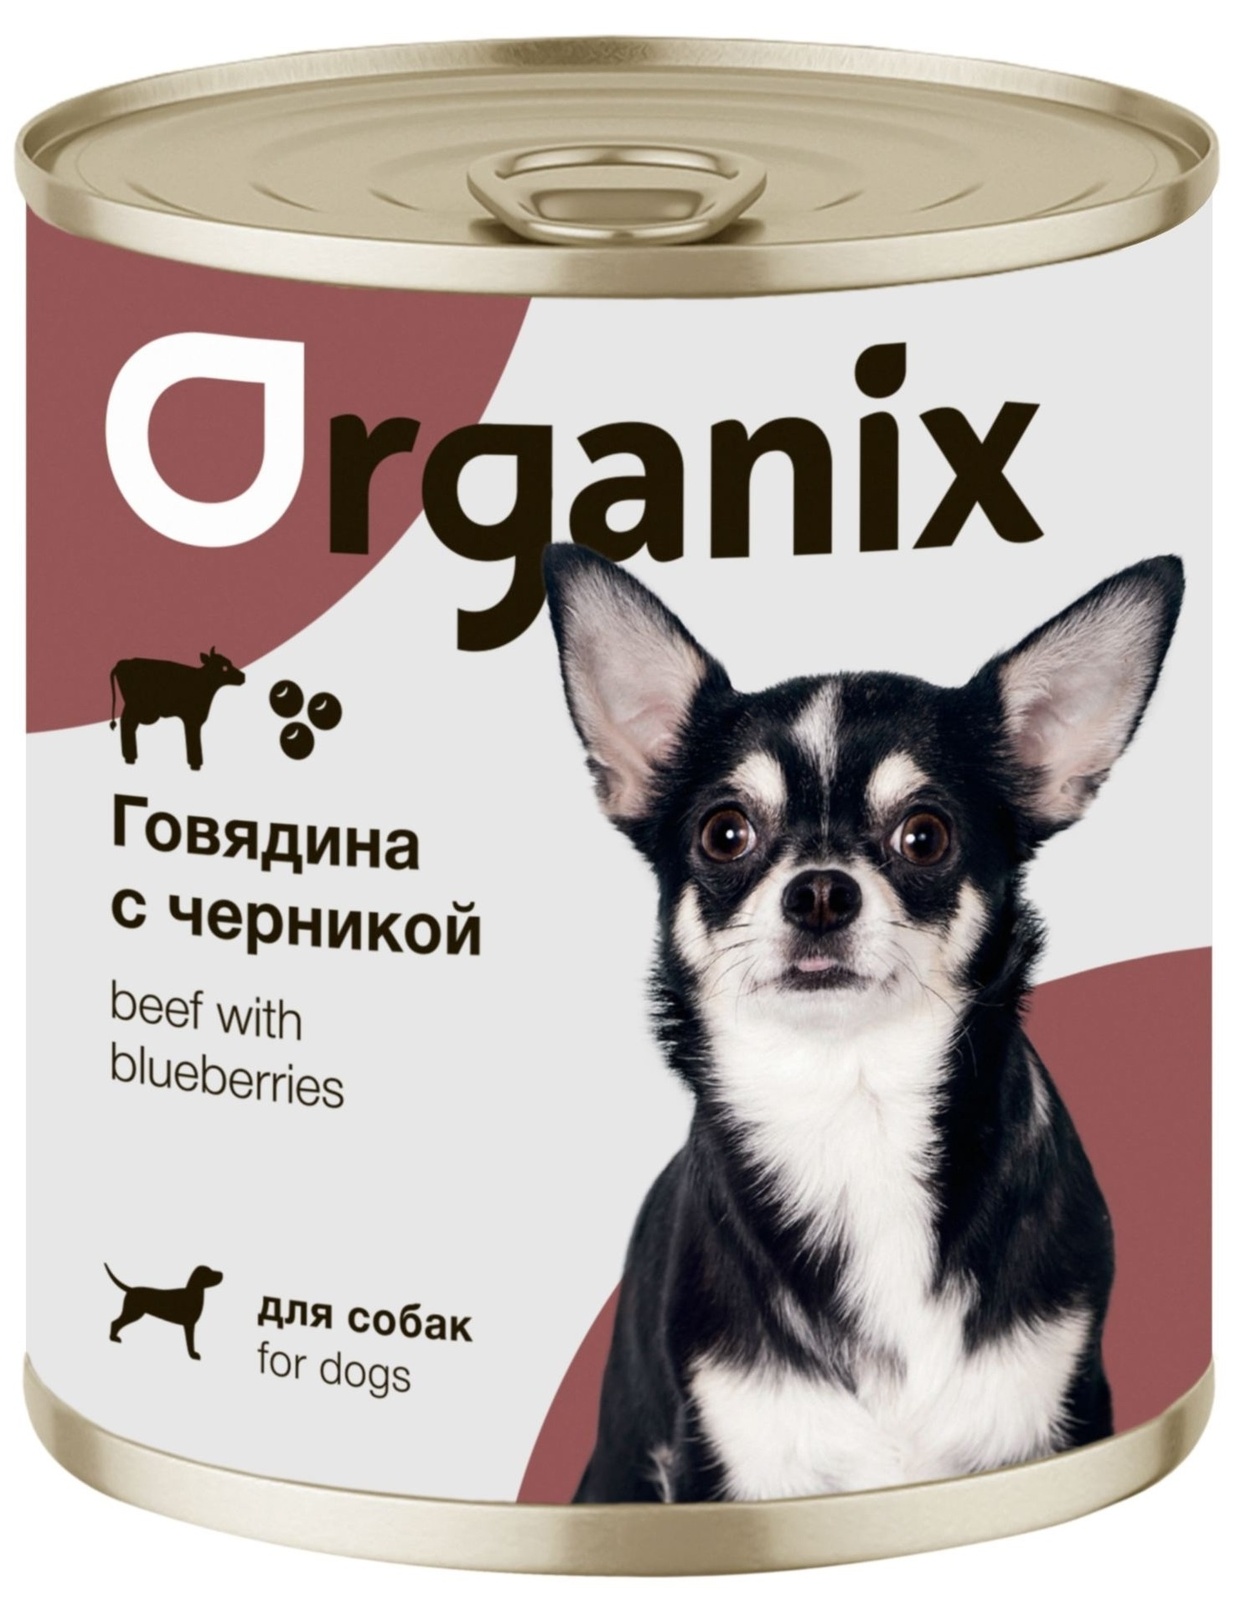 Organix консервы Organix консервы для собак Заливное из говядины с черникой (400 г) organix консервы organix консервы для собак заливное из говядины с черникой 400 г